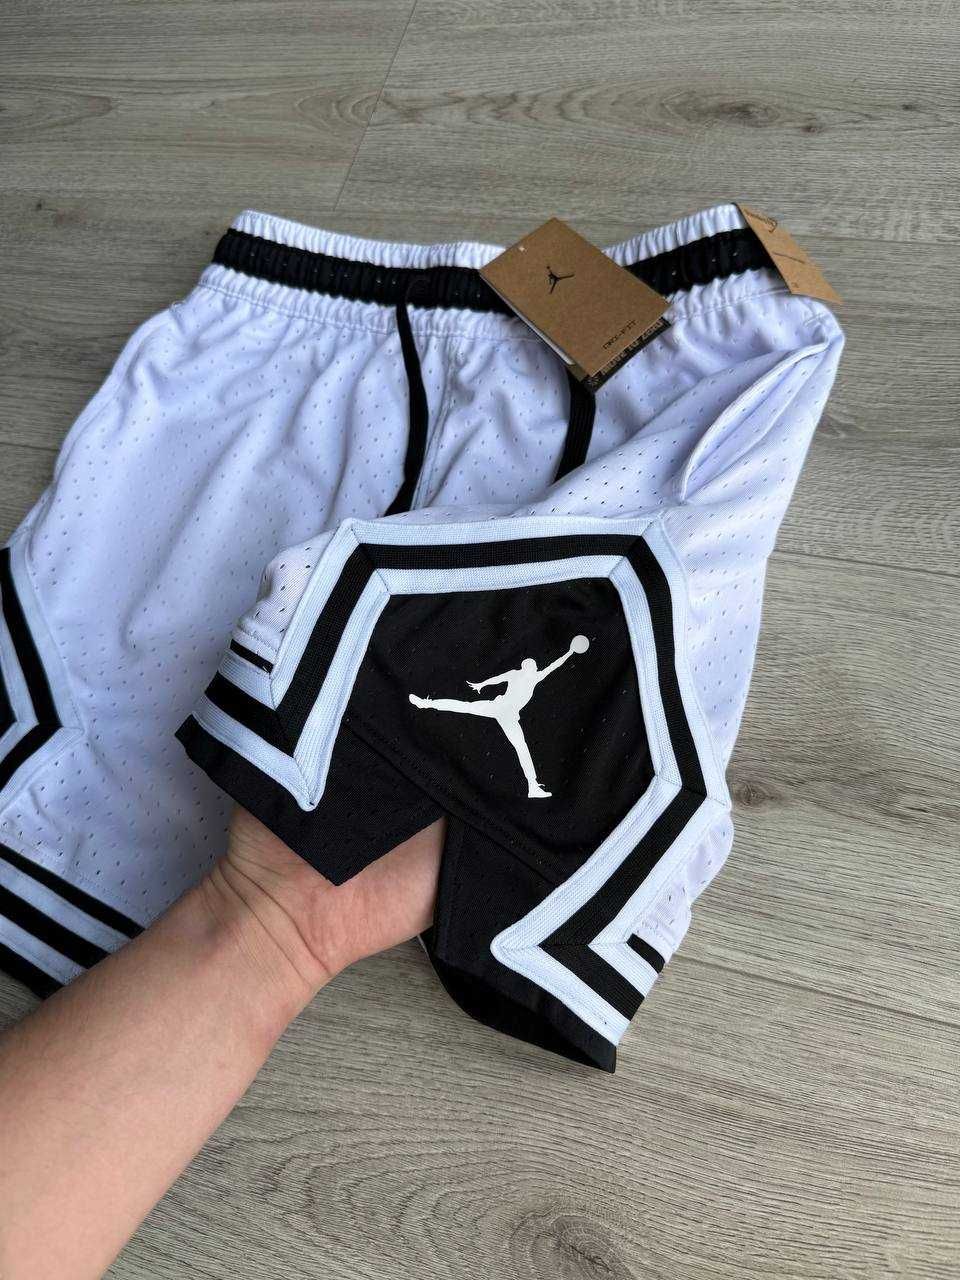 ОРИГІНАЛ Шорти Nike AIR Jordan, найкі, найк, джордан еір джордан,шорты